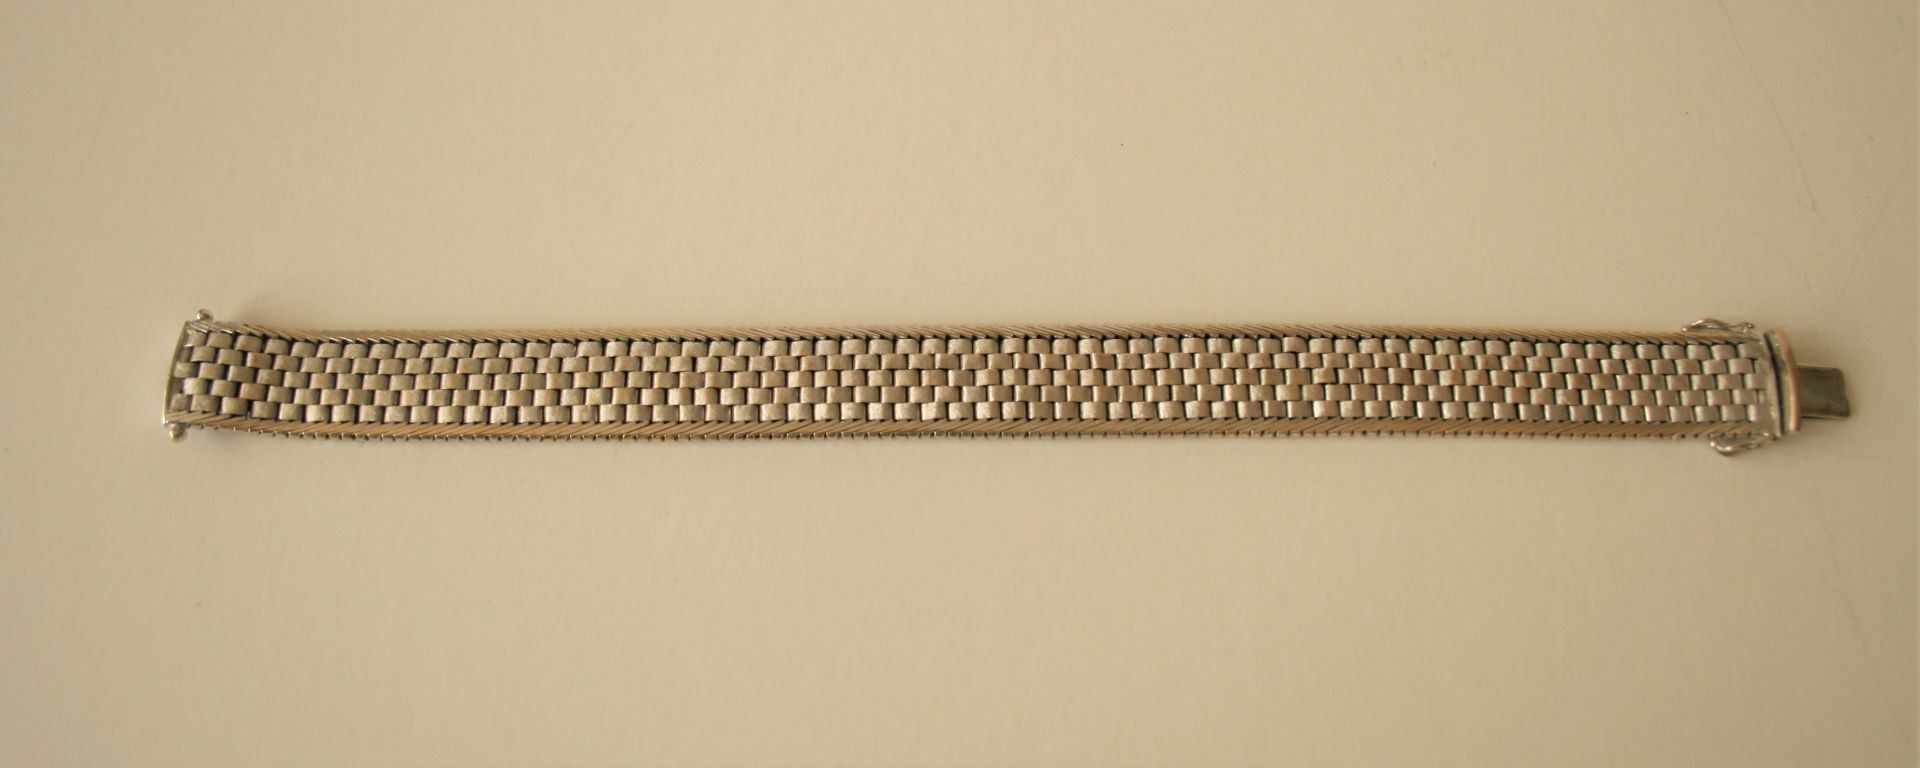 Bracelet en or blanc 750, mailles serrées - Longueur : 20 cm, Poids : 51,14 g - 750 [...]